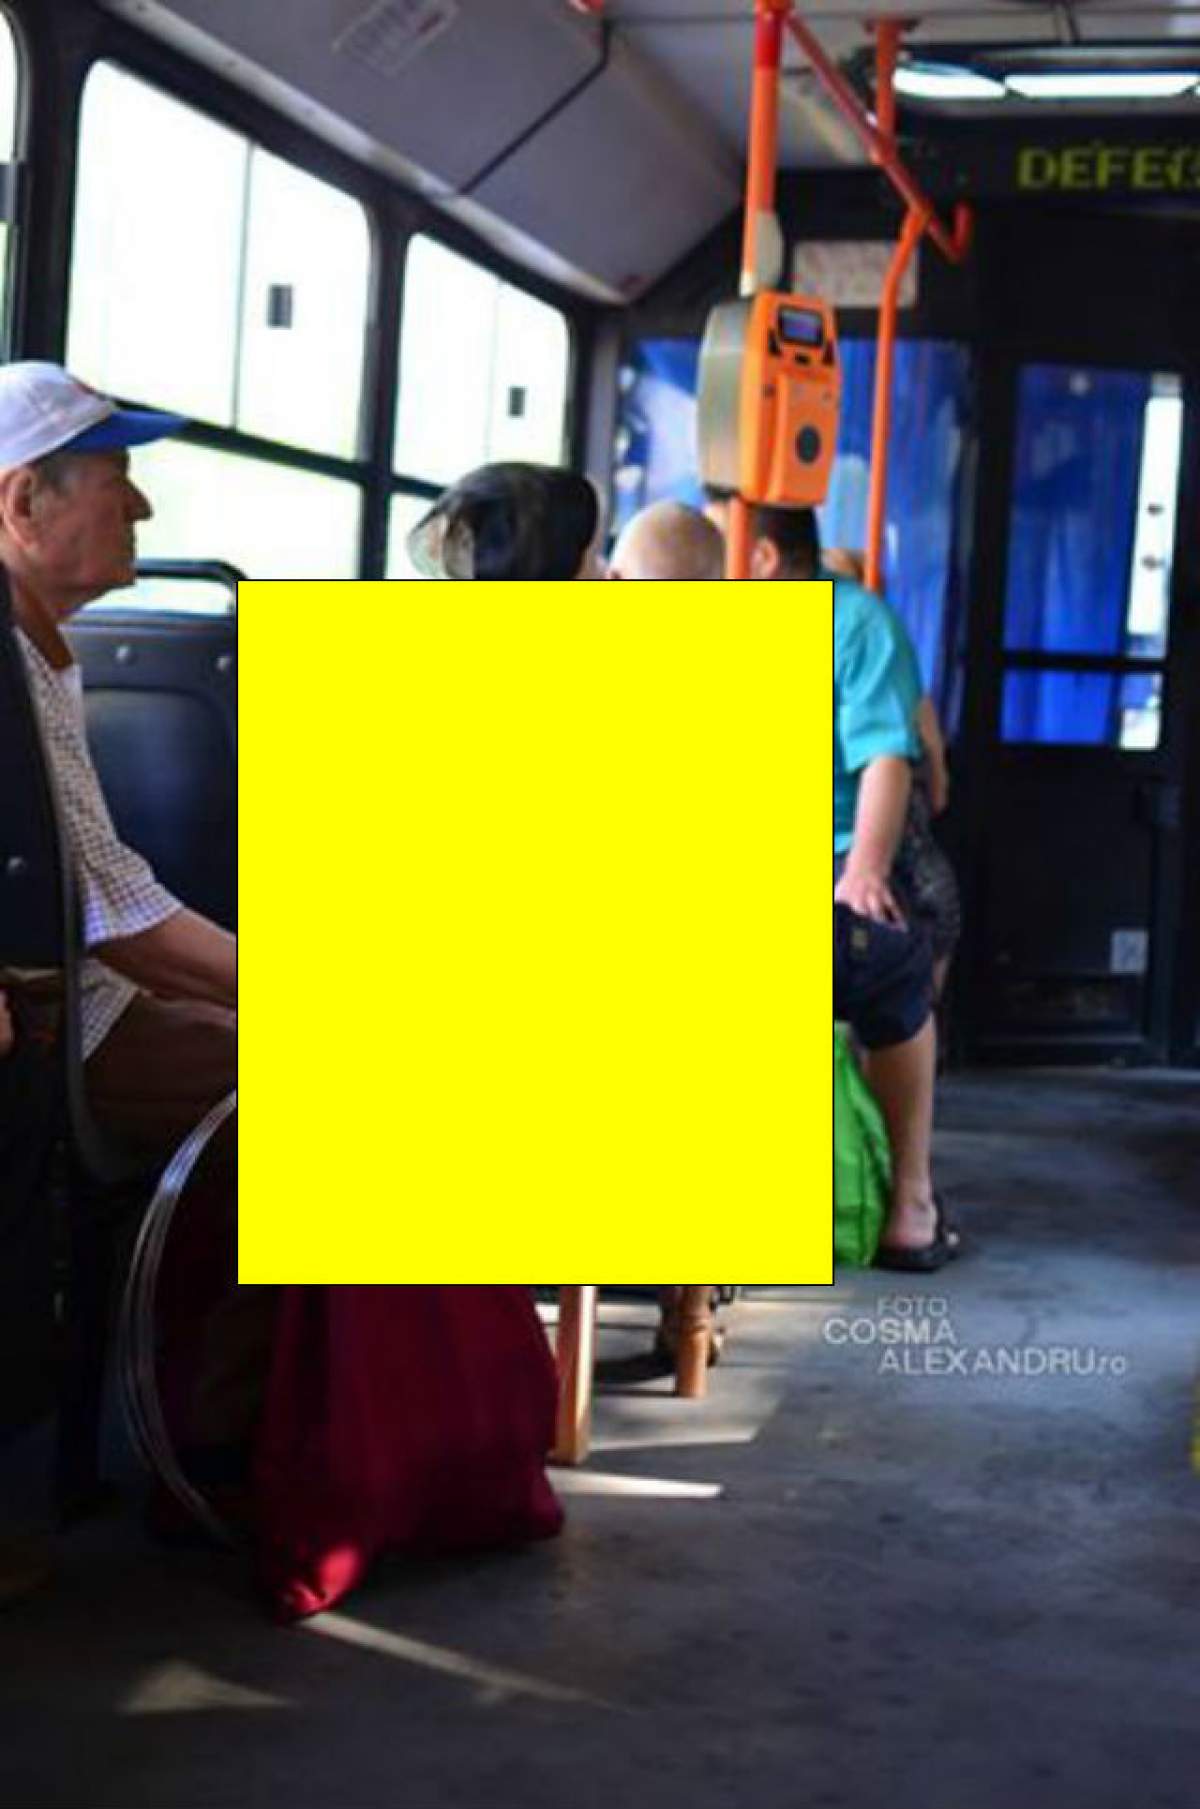 Ingeniozitatea românilor nu are limită! O pensionară a găsit o metodă INEDITĂ prin care reuşeşte să aibă mereu loc în autobuz